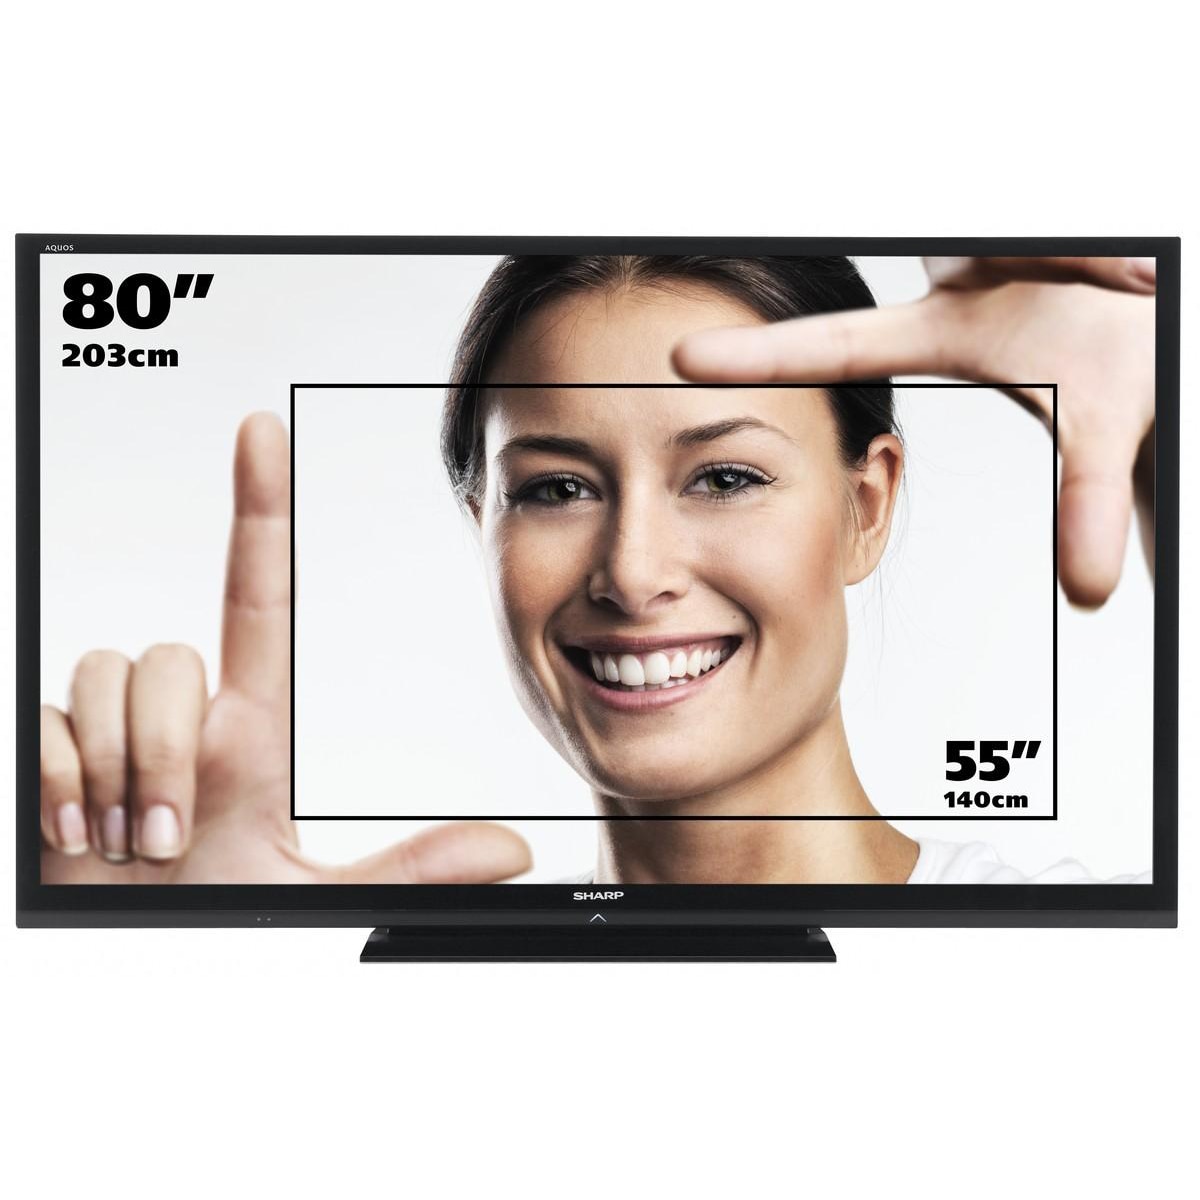 47 диагональ телевизора. Диагональ телевизора. Размеры телевизоров. Телевизоры разной диагонали. Диагональ экрана телевизора.